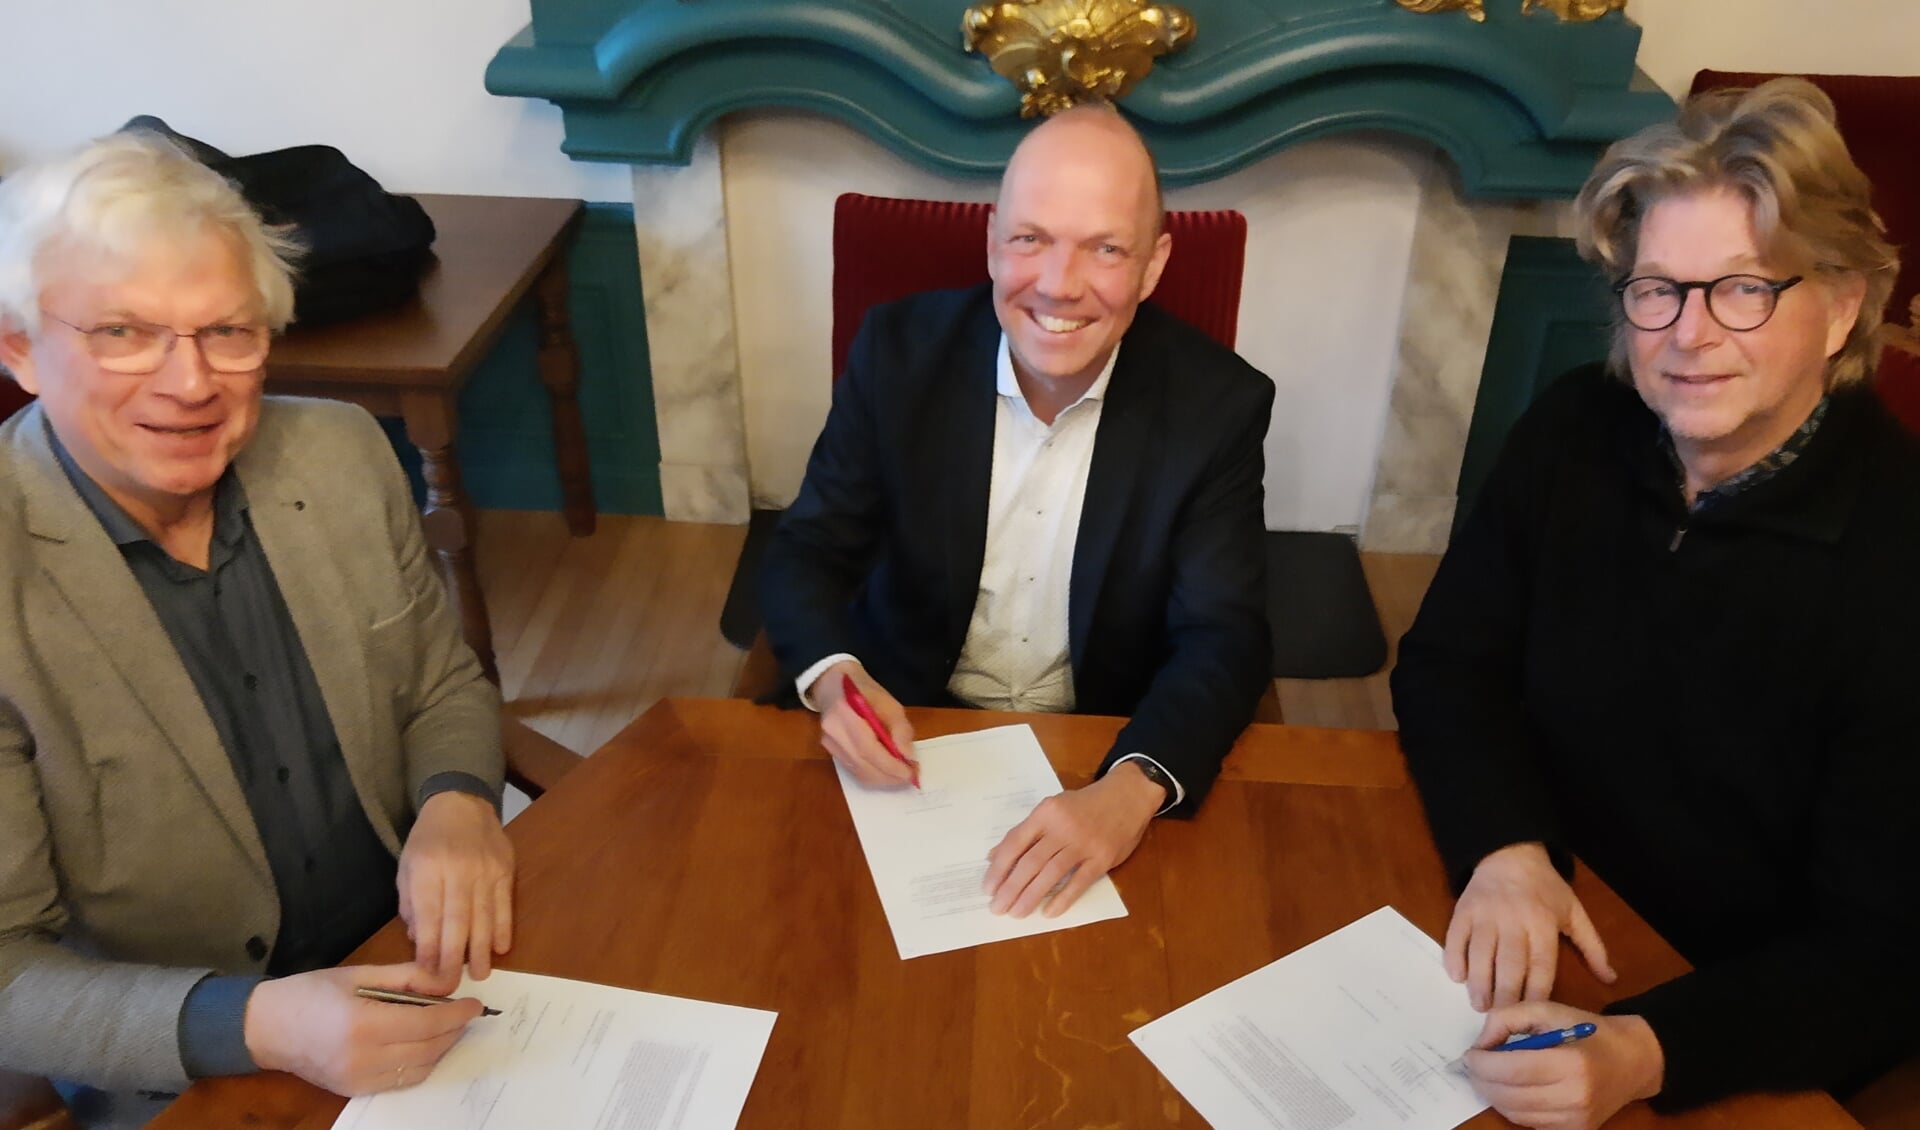 De overeenkomst tot samenwerking met de gemeente Noardeast-Fyslân wordt ondertekend.